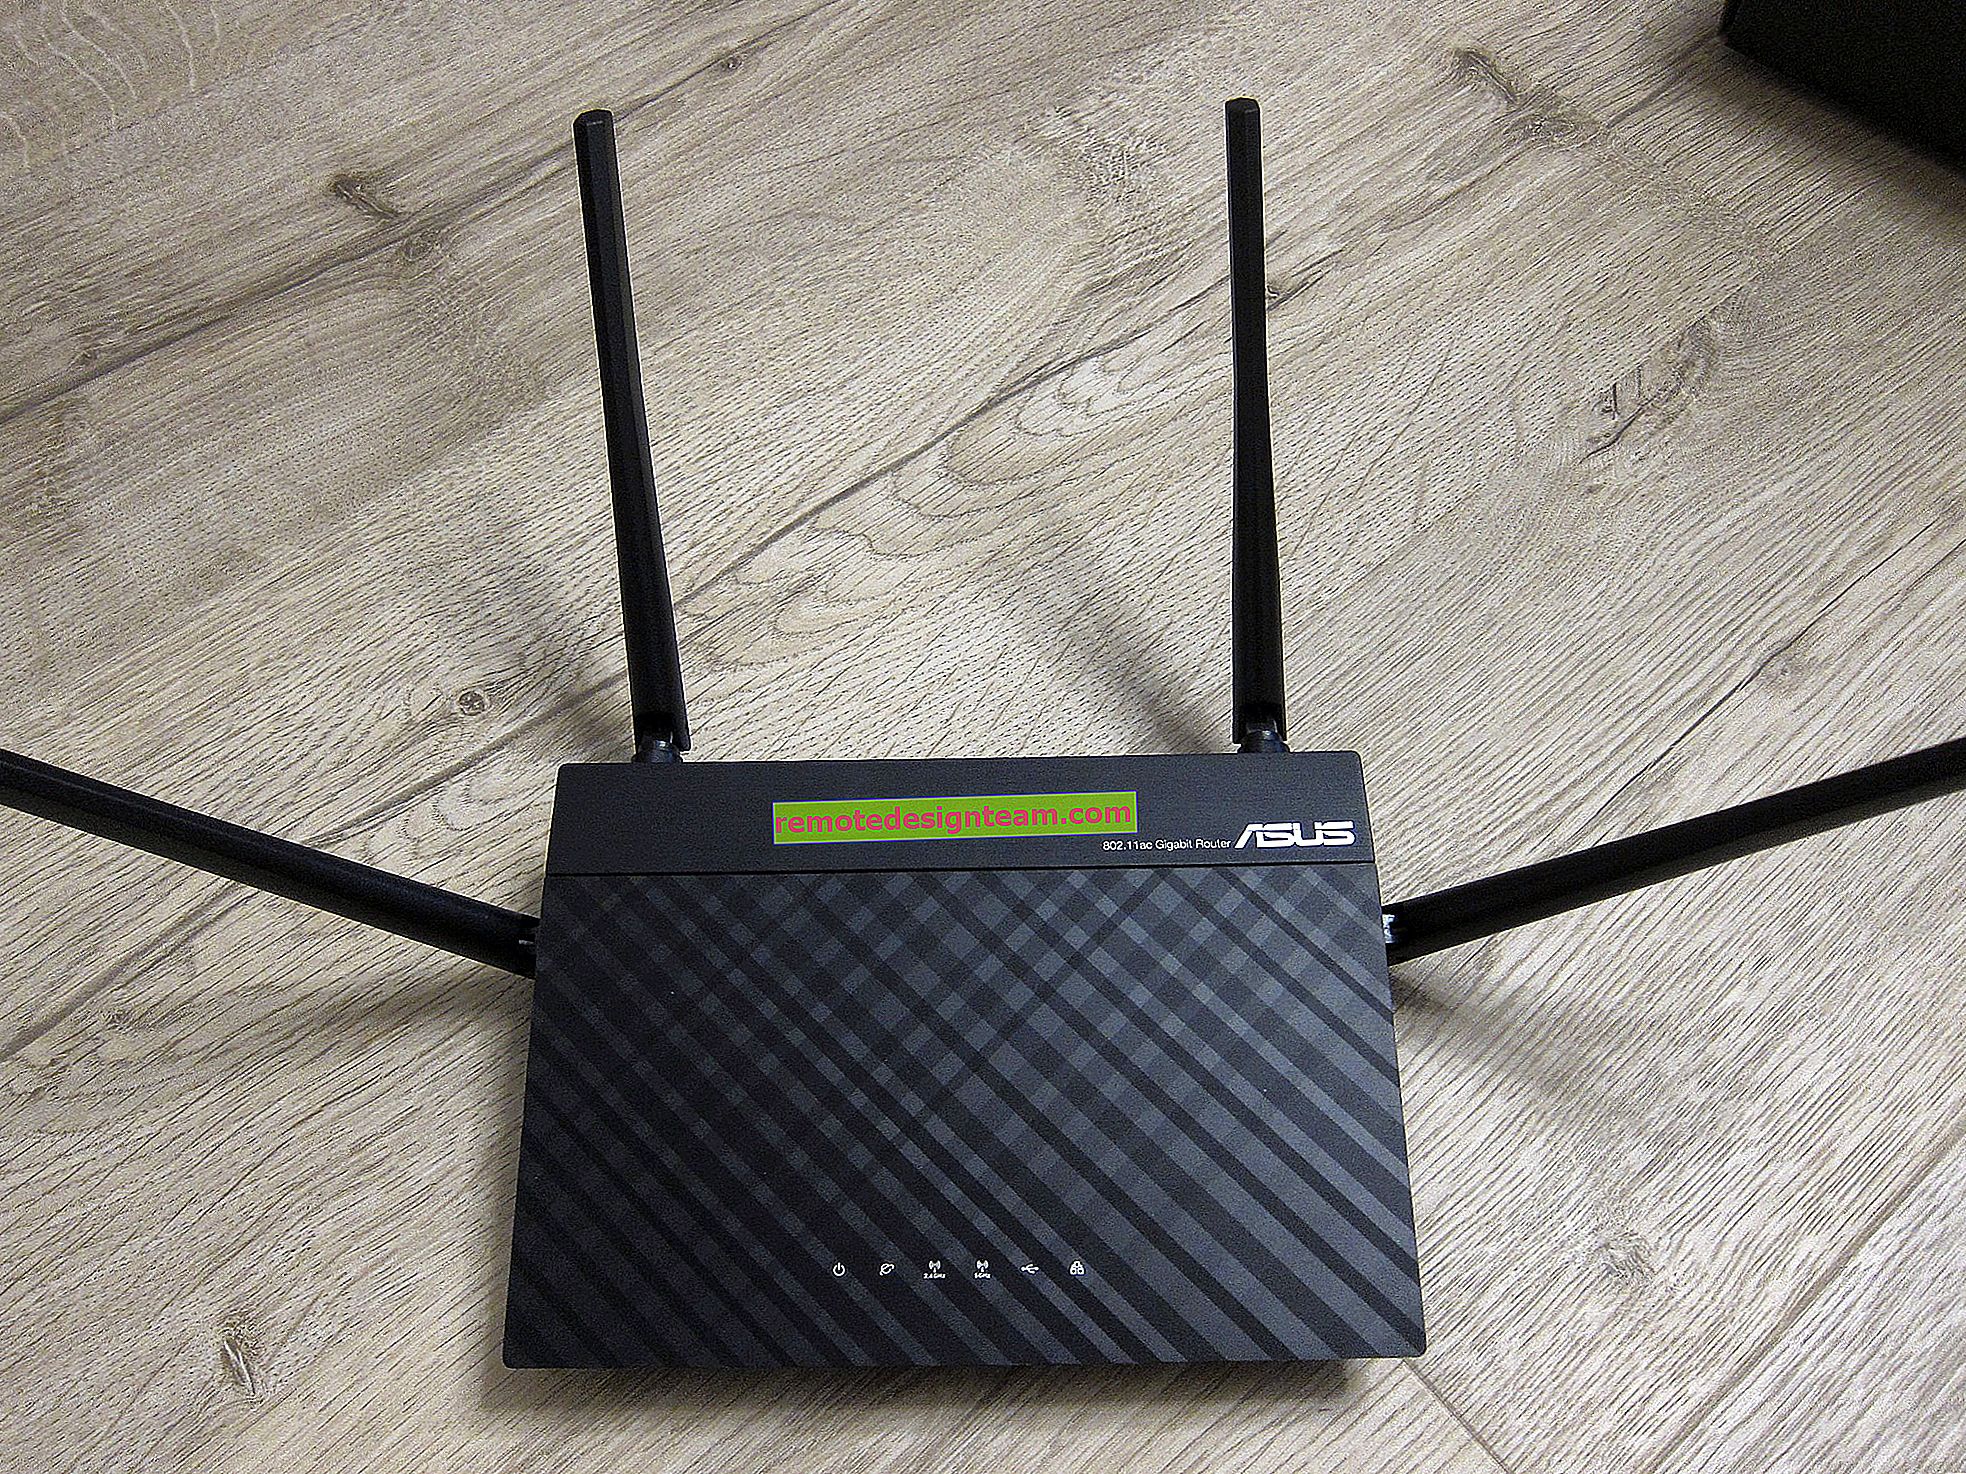 802.11ac - nowy standard Wi-Fi